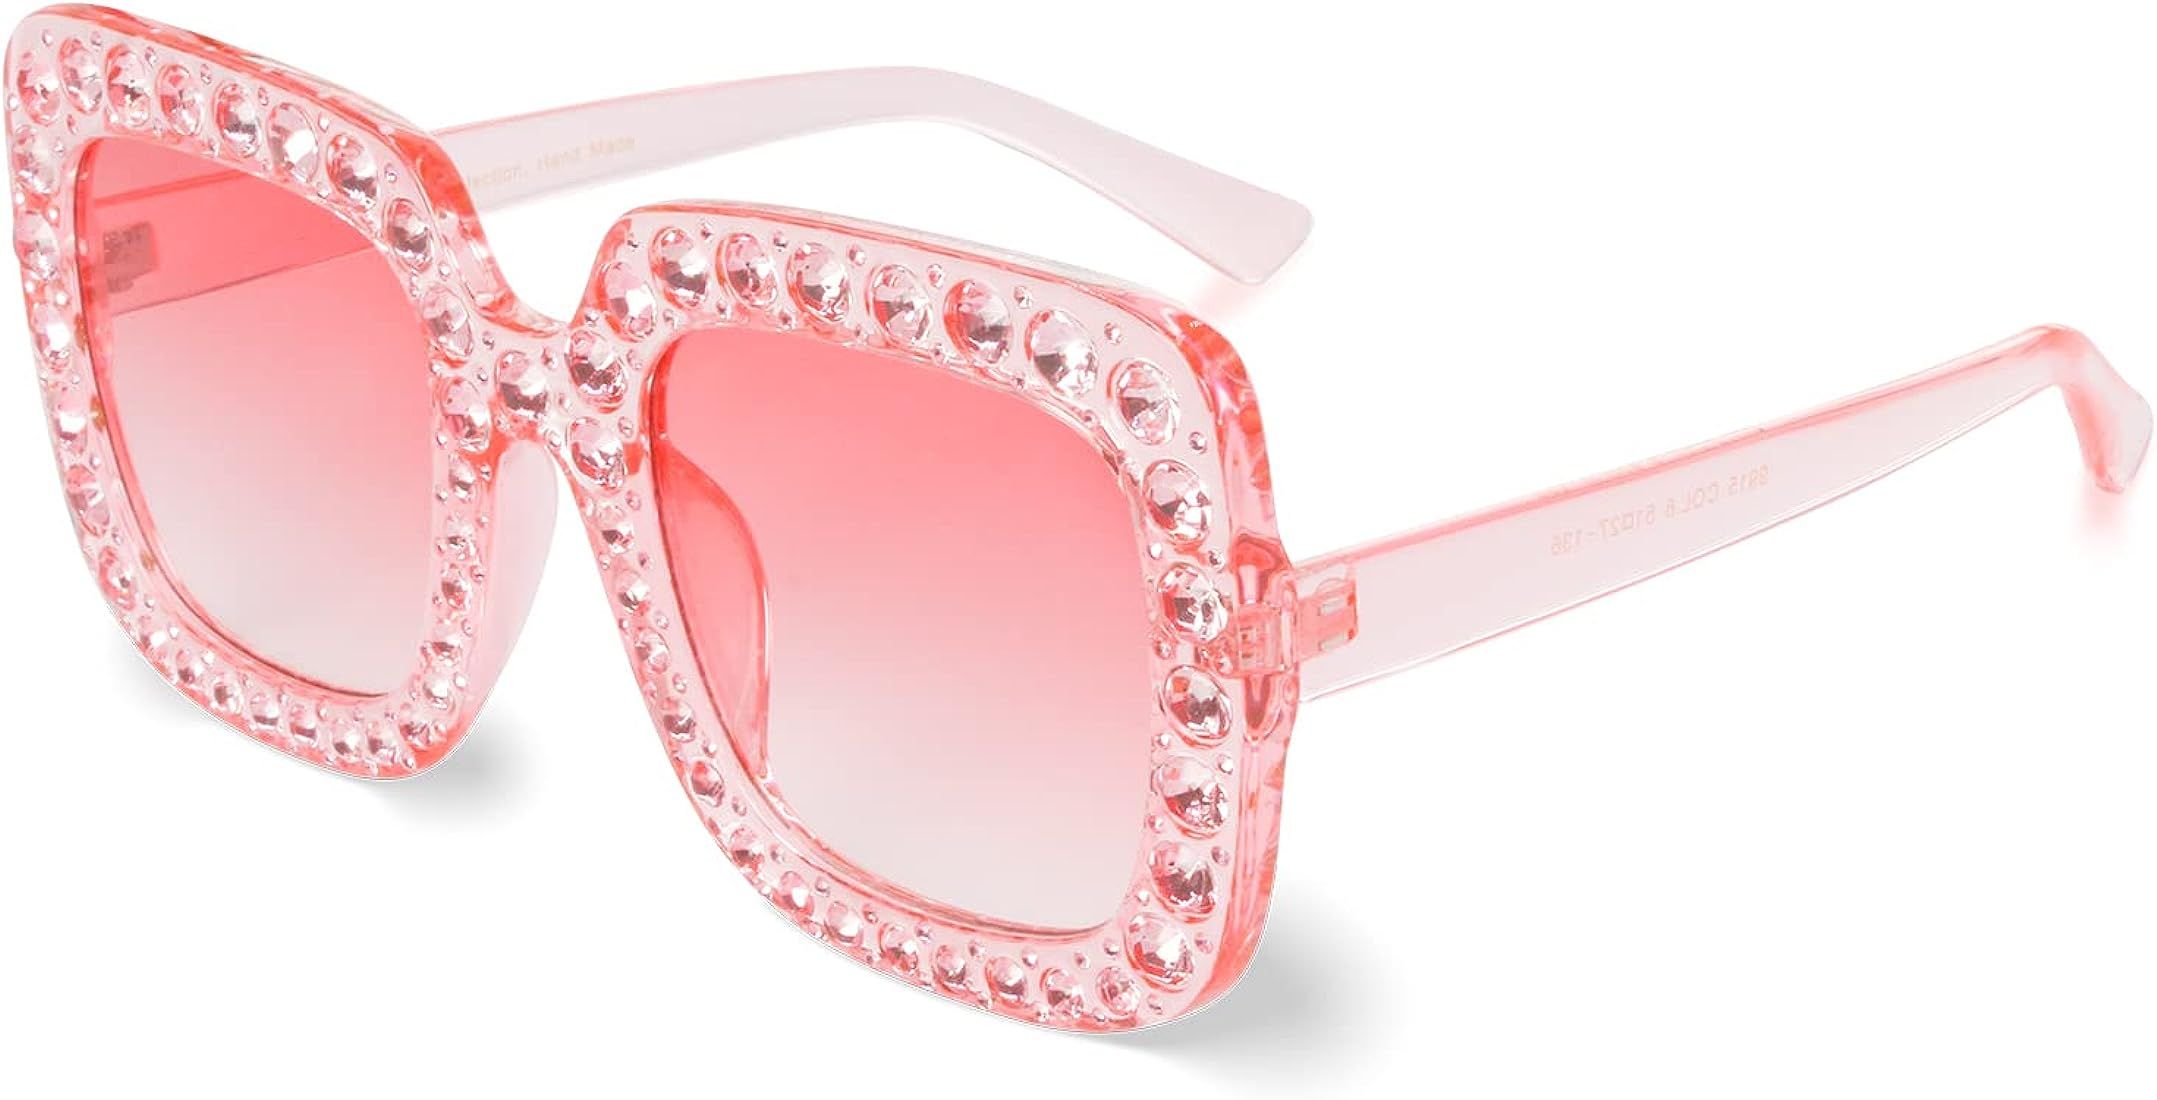 Xpectrum Extra Large Squared Elton Crystal Sunglasses Bling Rhinestone Concert Glasses | Amazon (US)